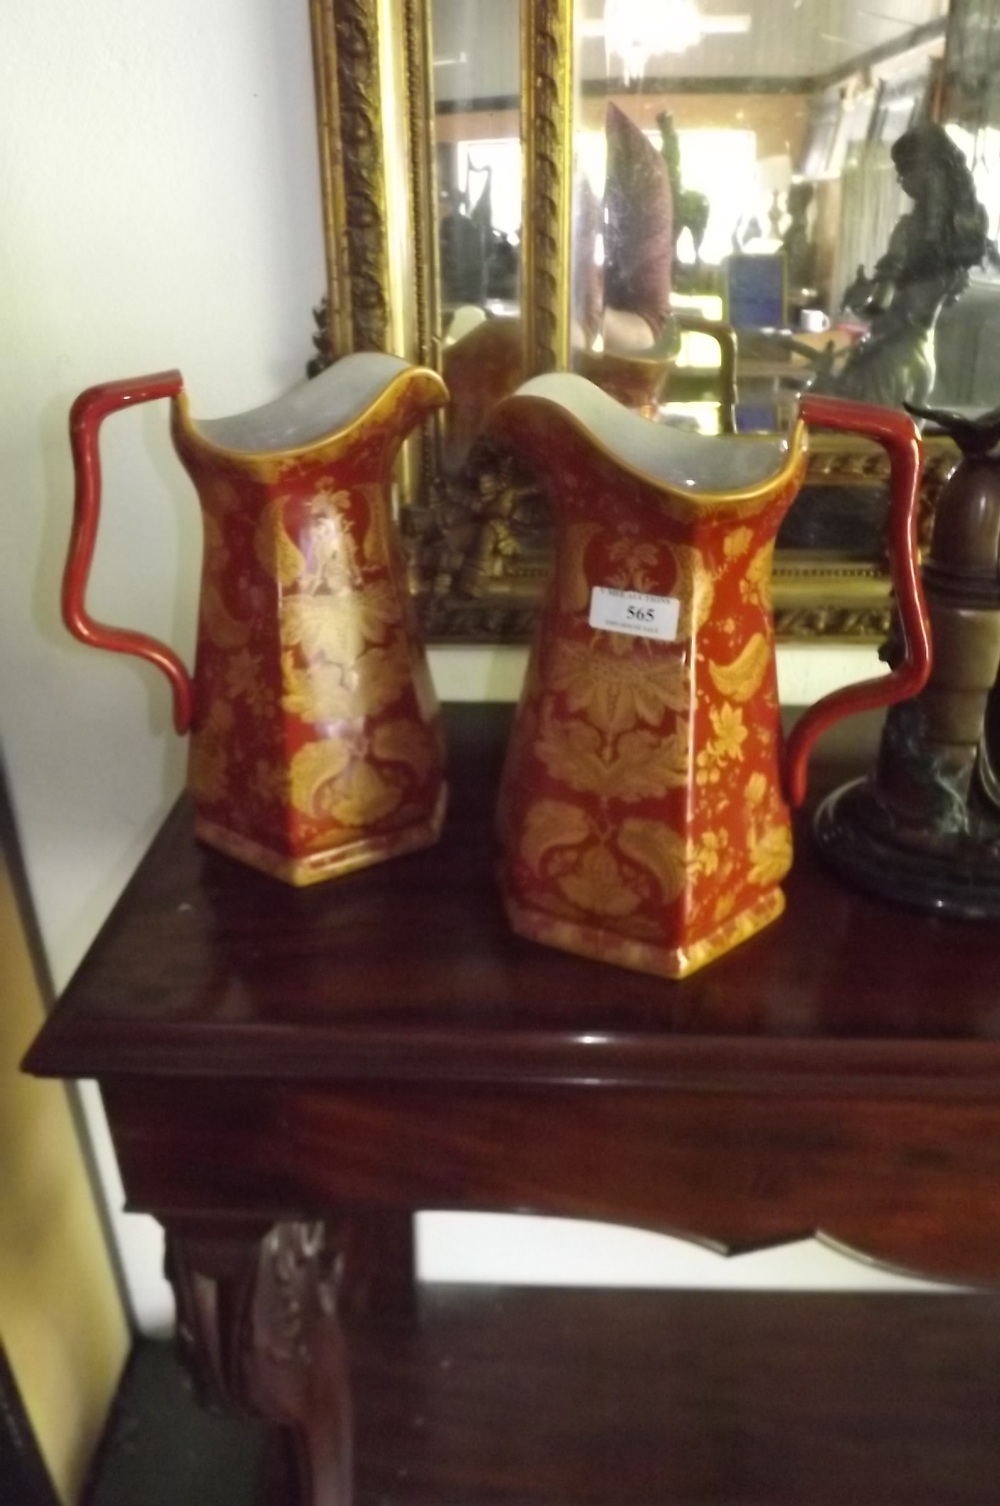 Pair of ceramic jugs with floral decorat